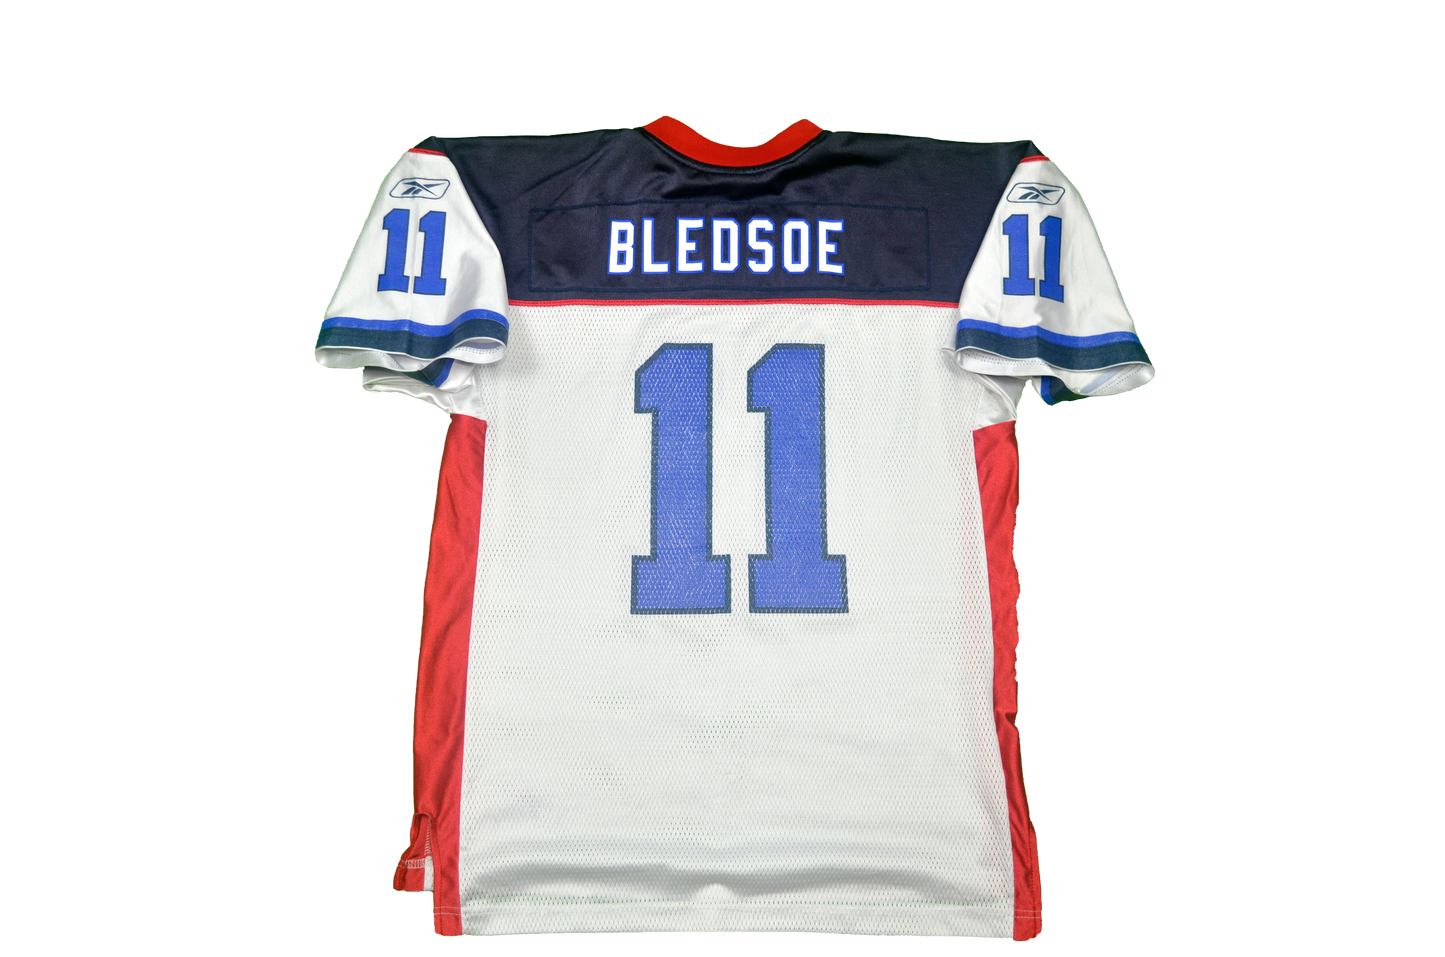 2002-04 BUFFALO BILLS BLEDSOE #11 REEBOK ON FIELD JERSEY (AWAY) M